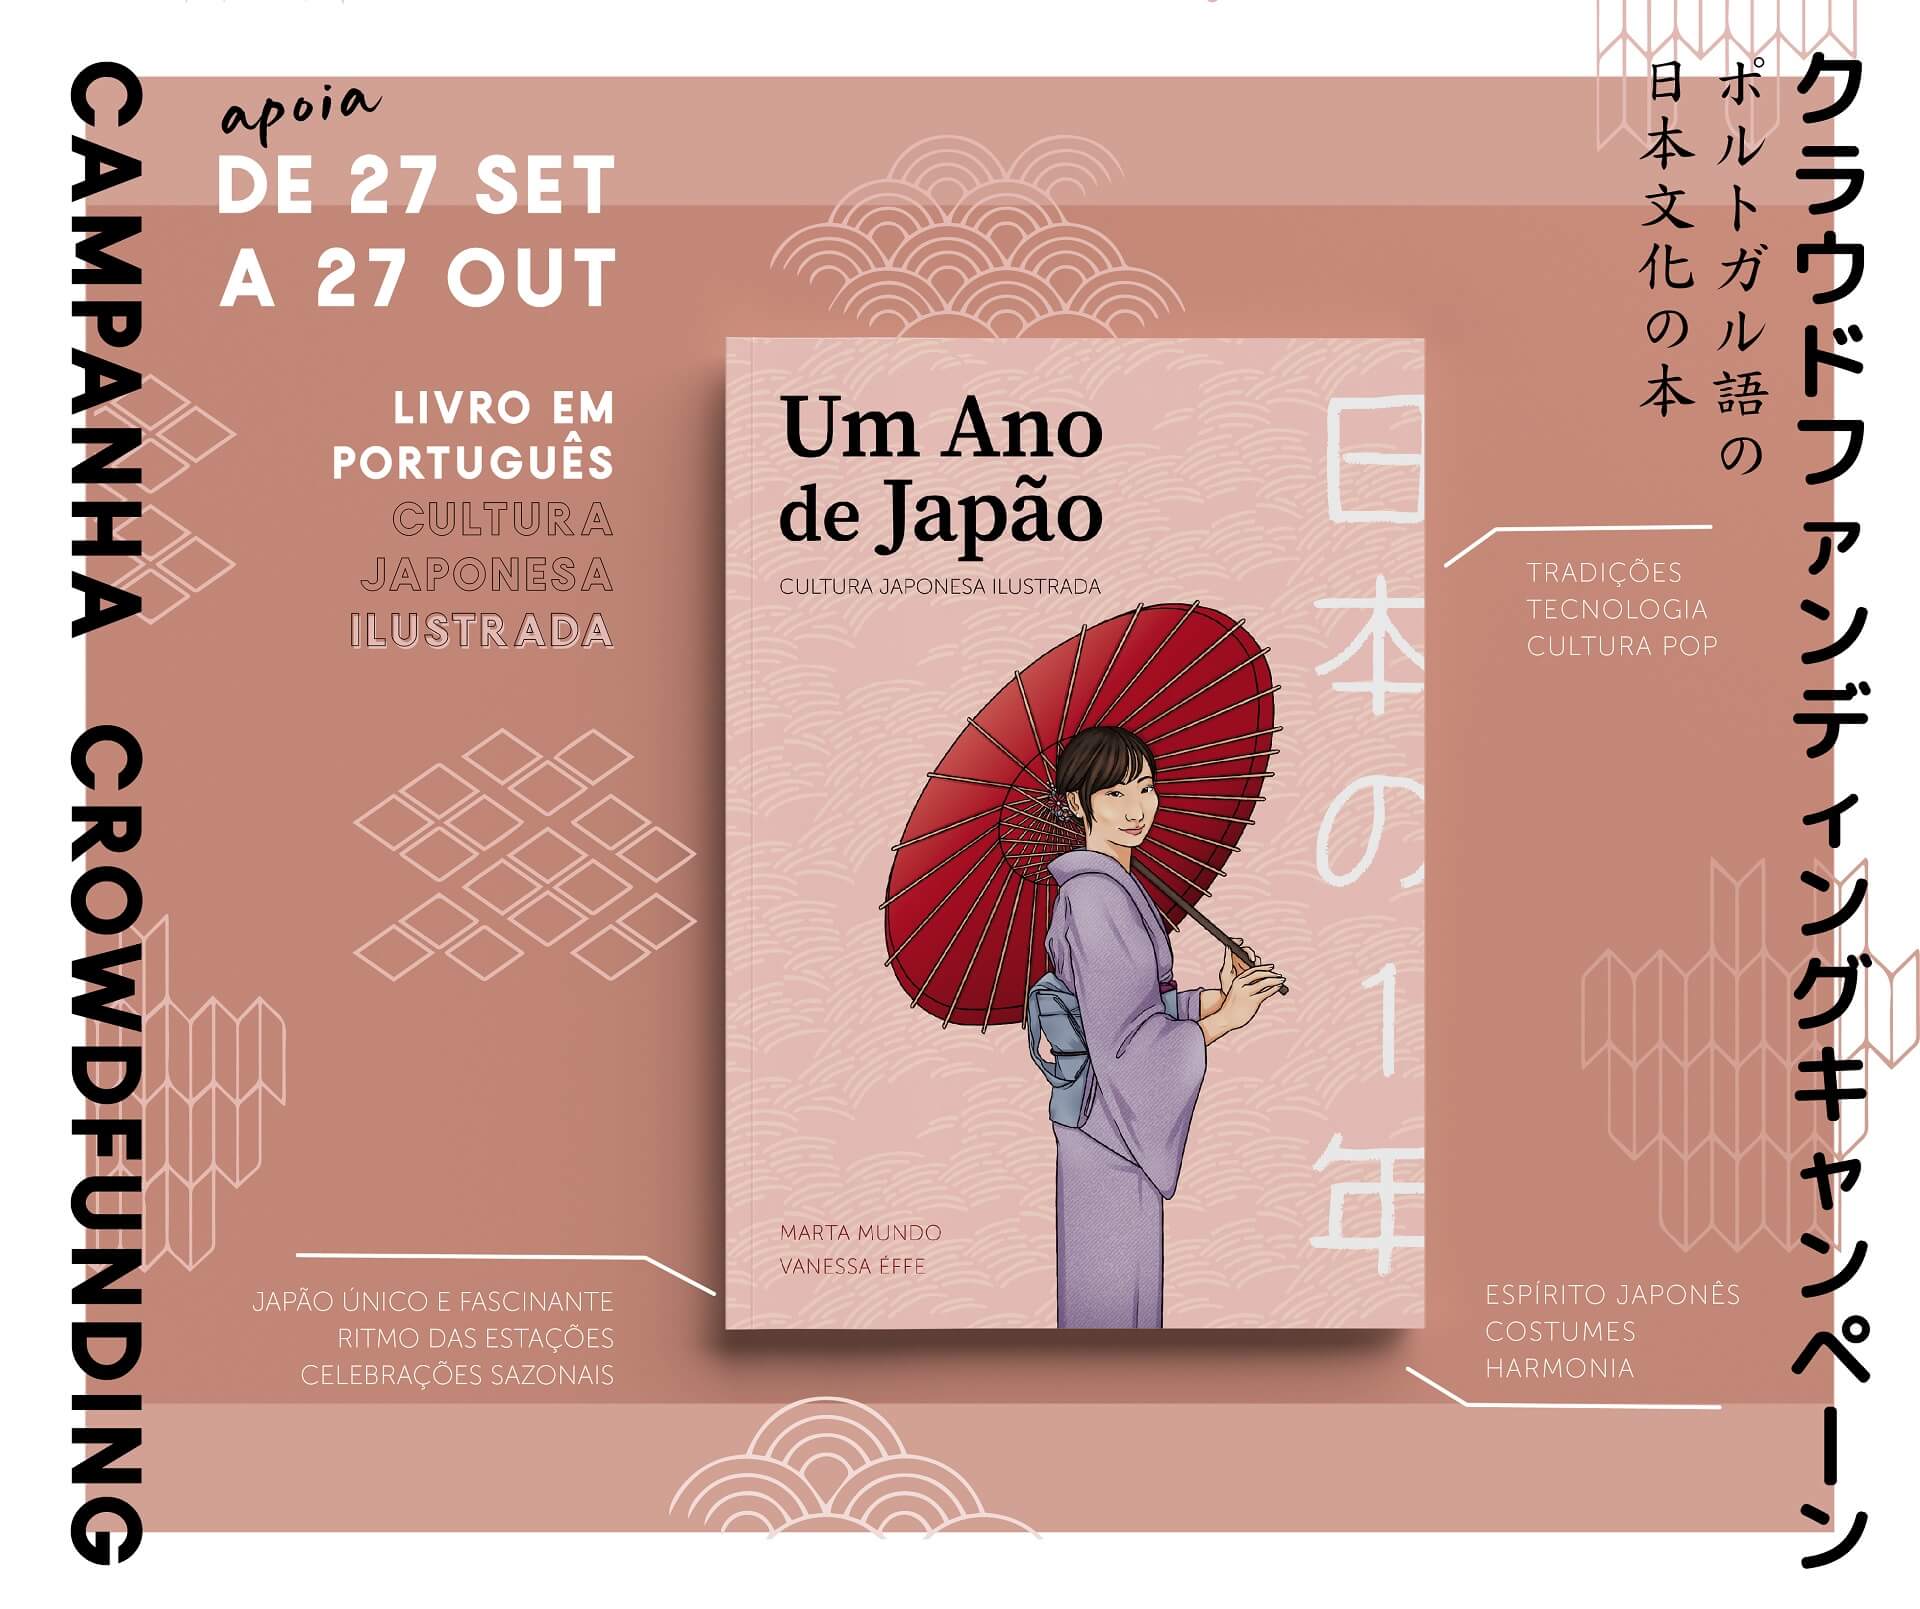 Um ano de Jaoão - Livro ilustrado cultura japonesa